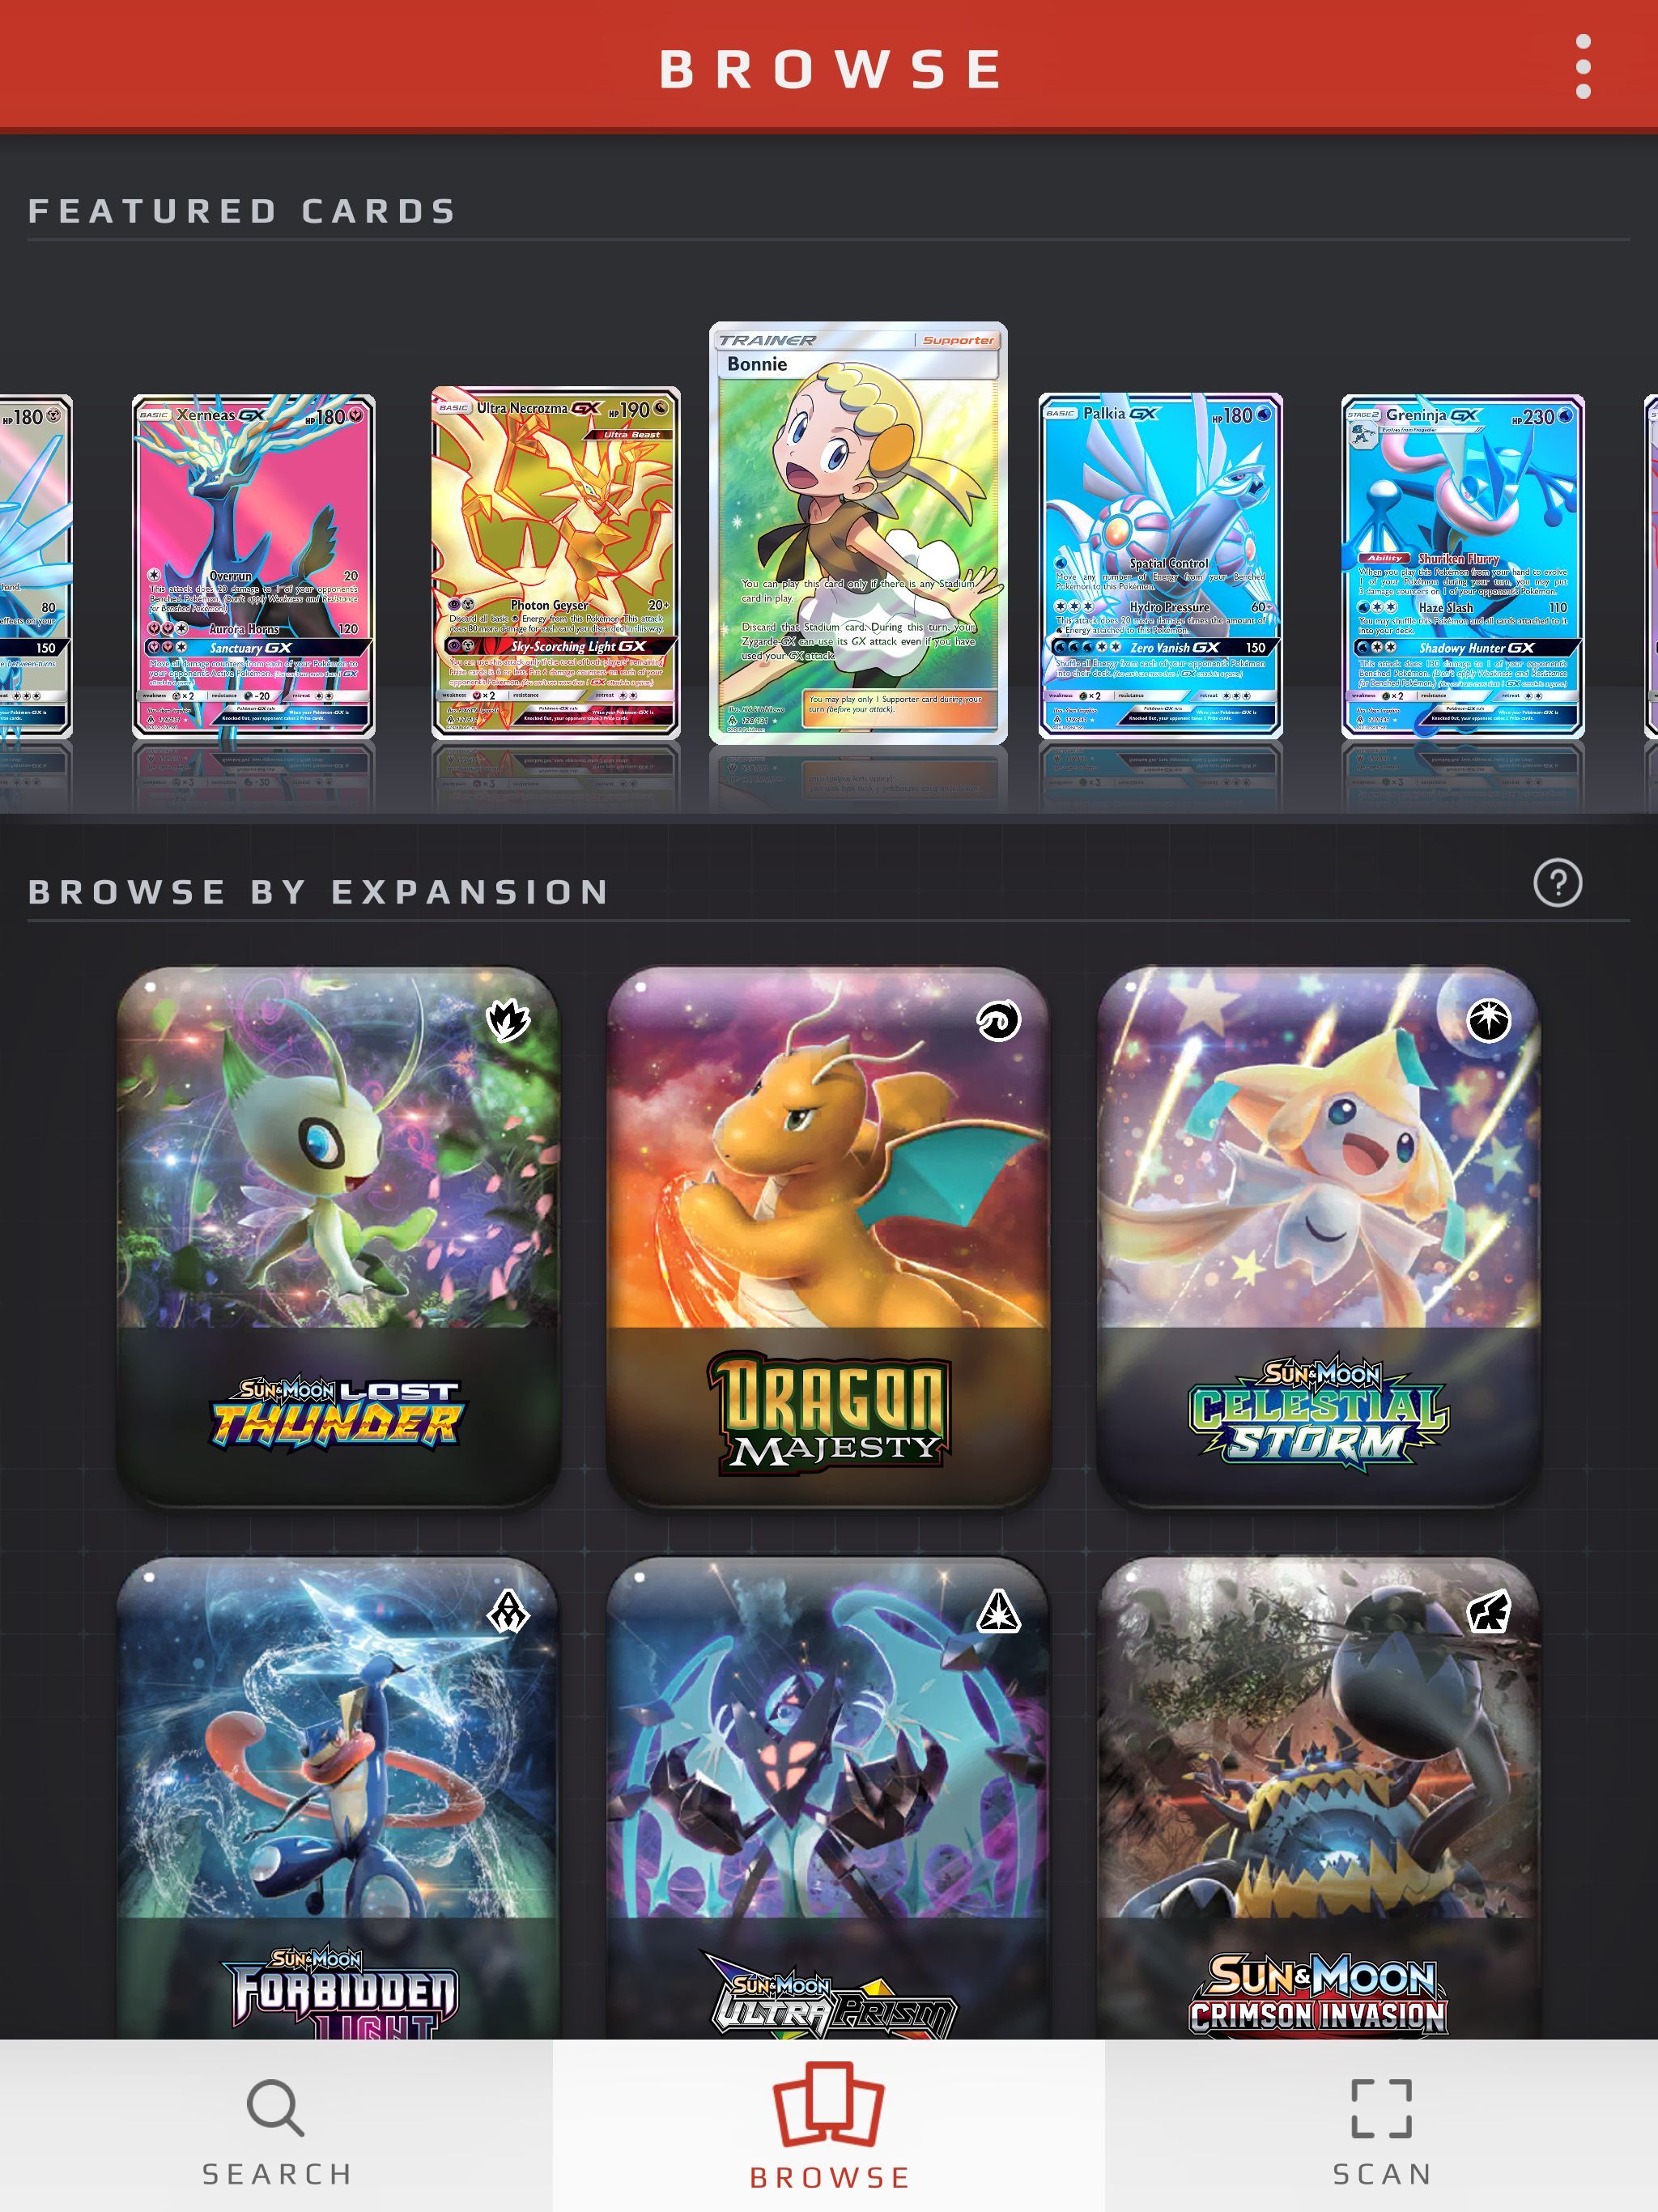 Track Your Pokémon TCG Cards on the Go